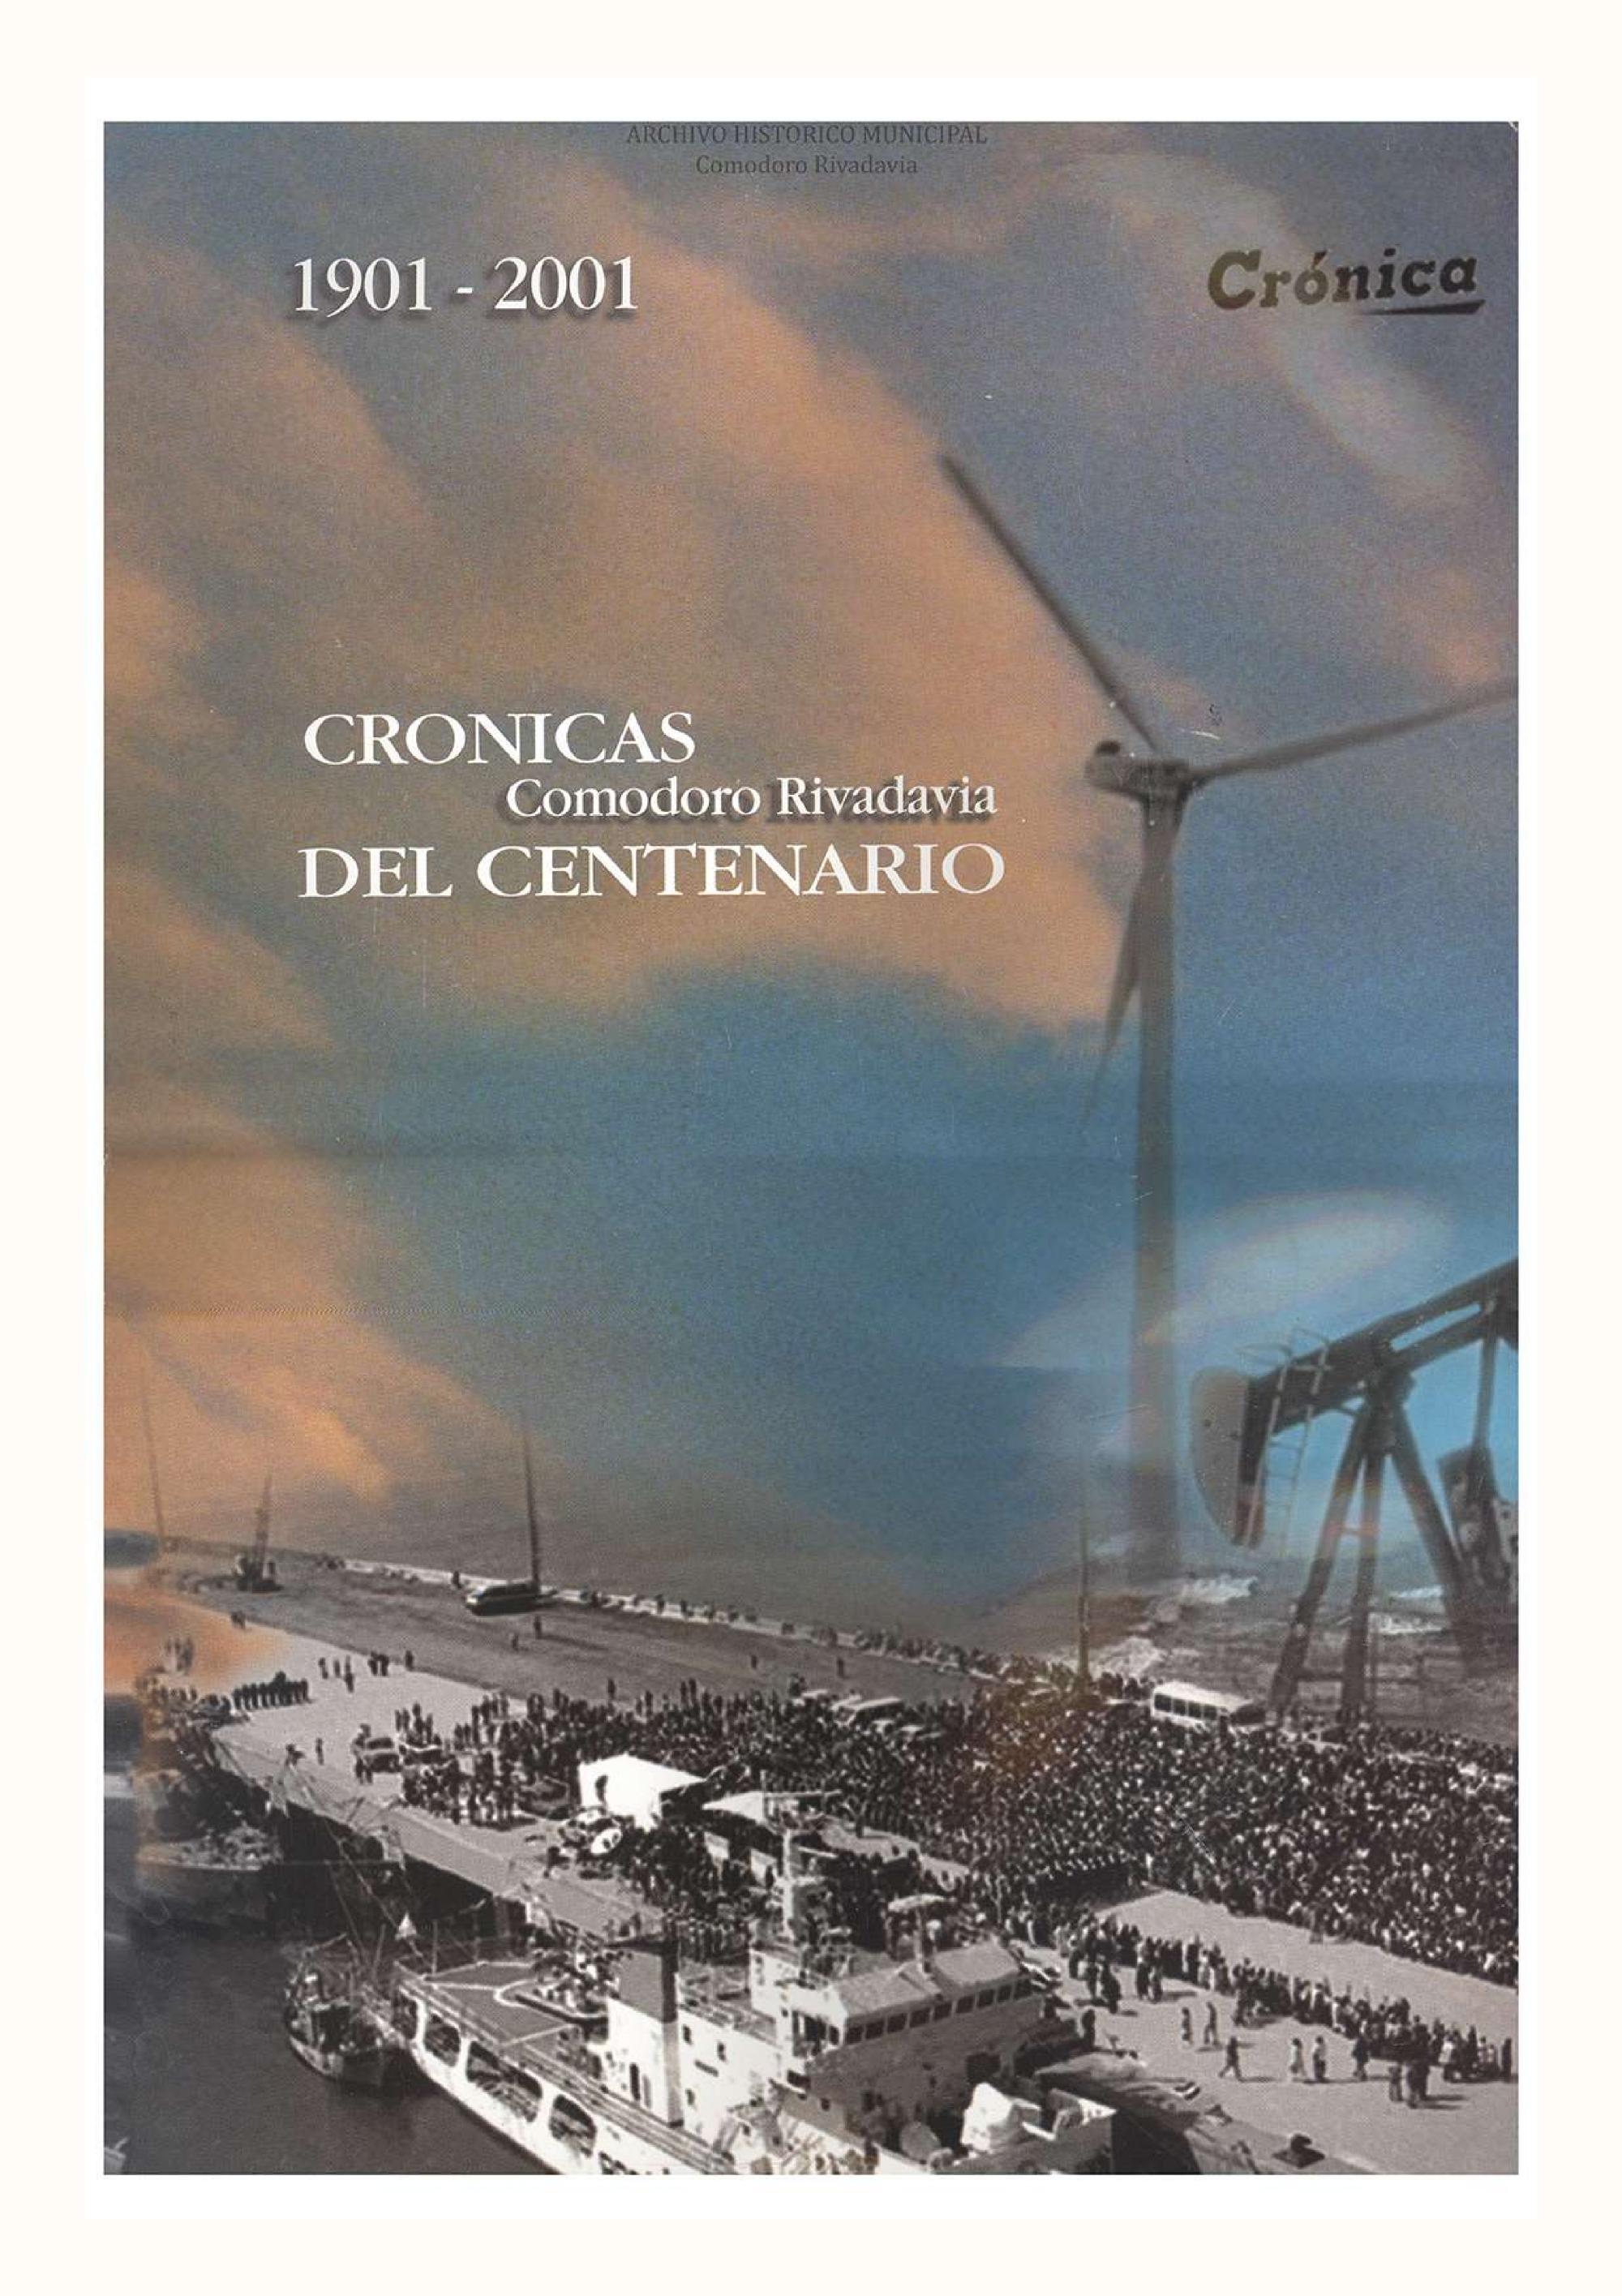 Comodoro Rivadavia - Crónicas del Centenario - 1901 - 2001